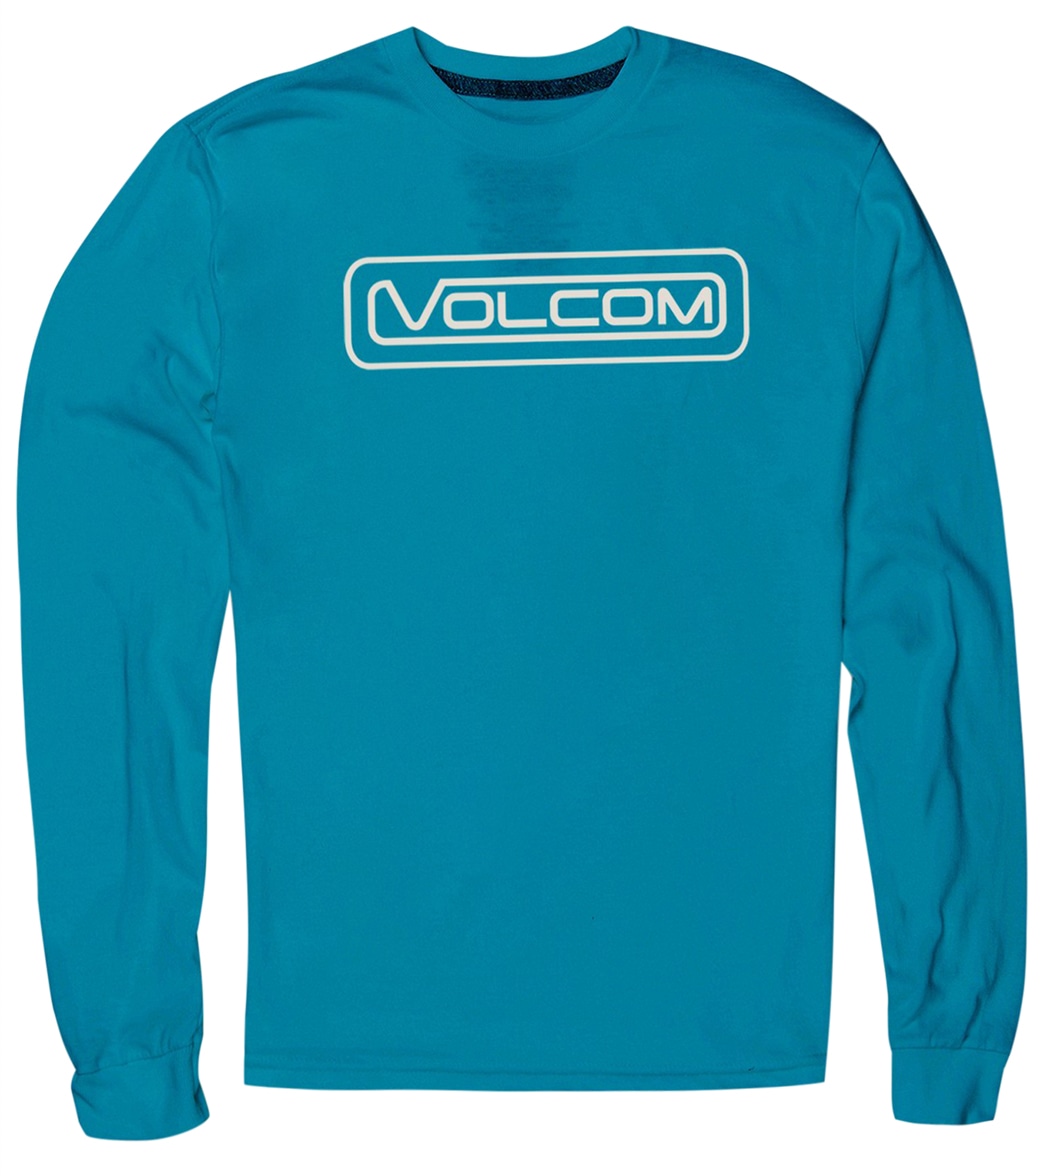 Volcom Boys' Striper Long Sleeve T-Shirt - Barrier Reef 2T - Swimoutlet.com